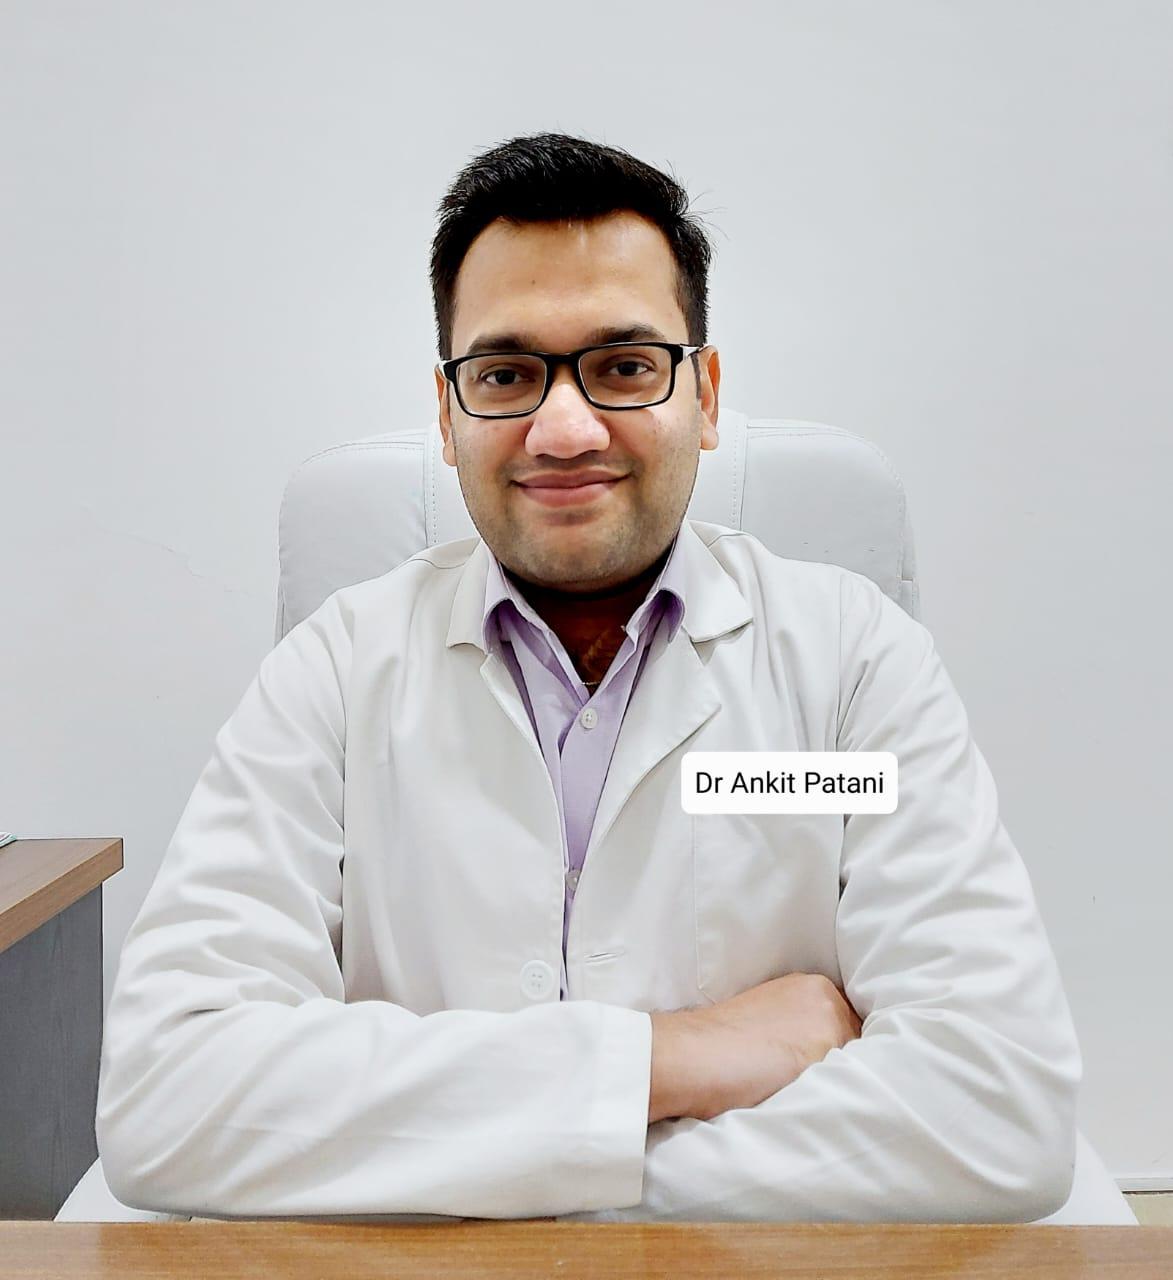 Dr. Ankit Patani